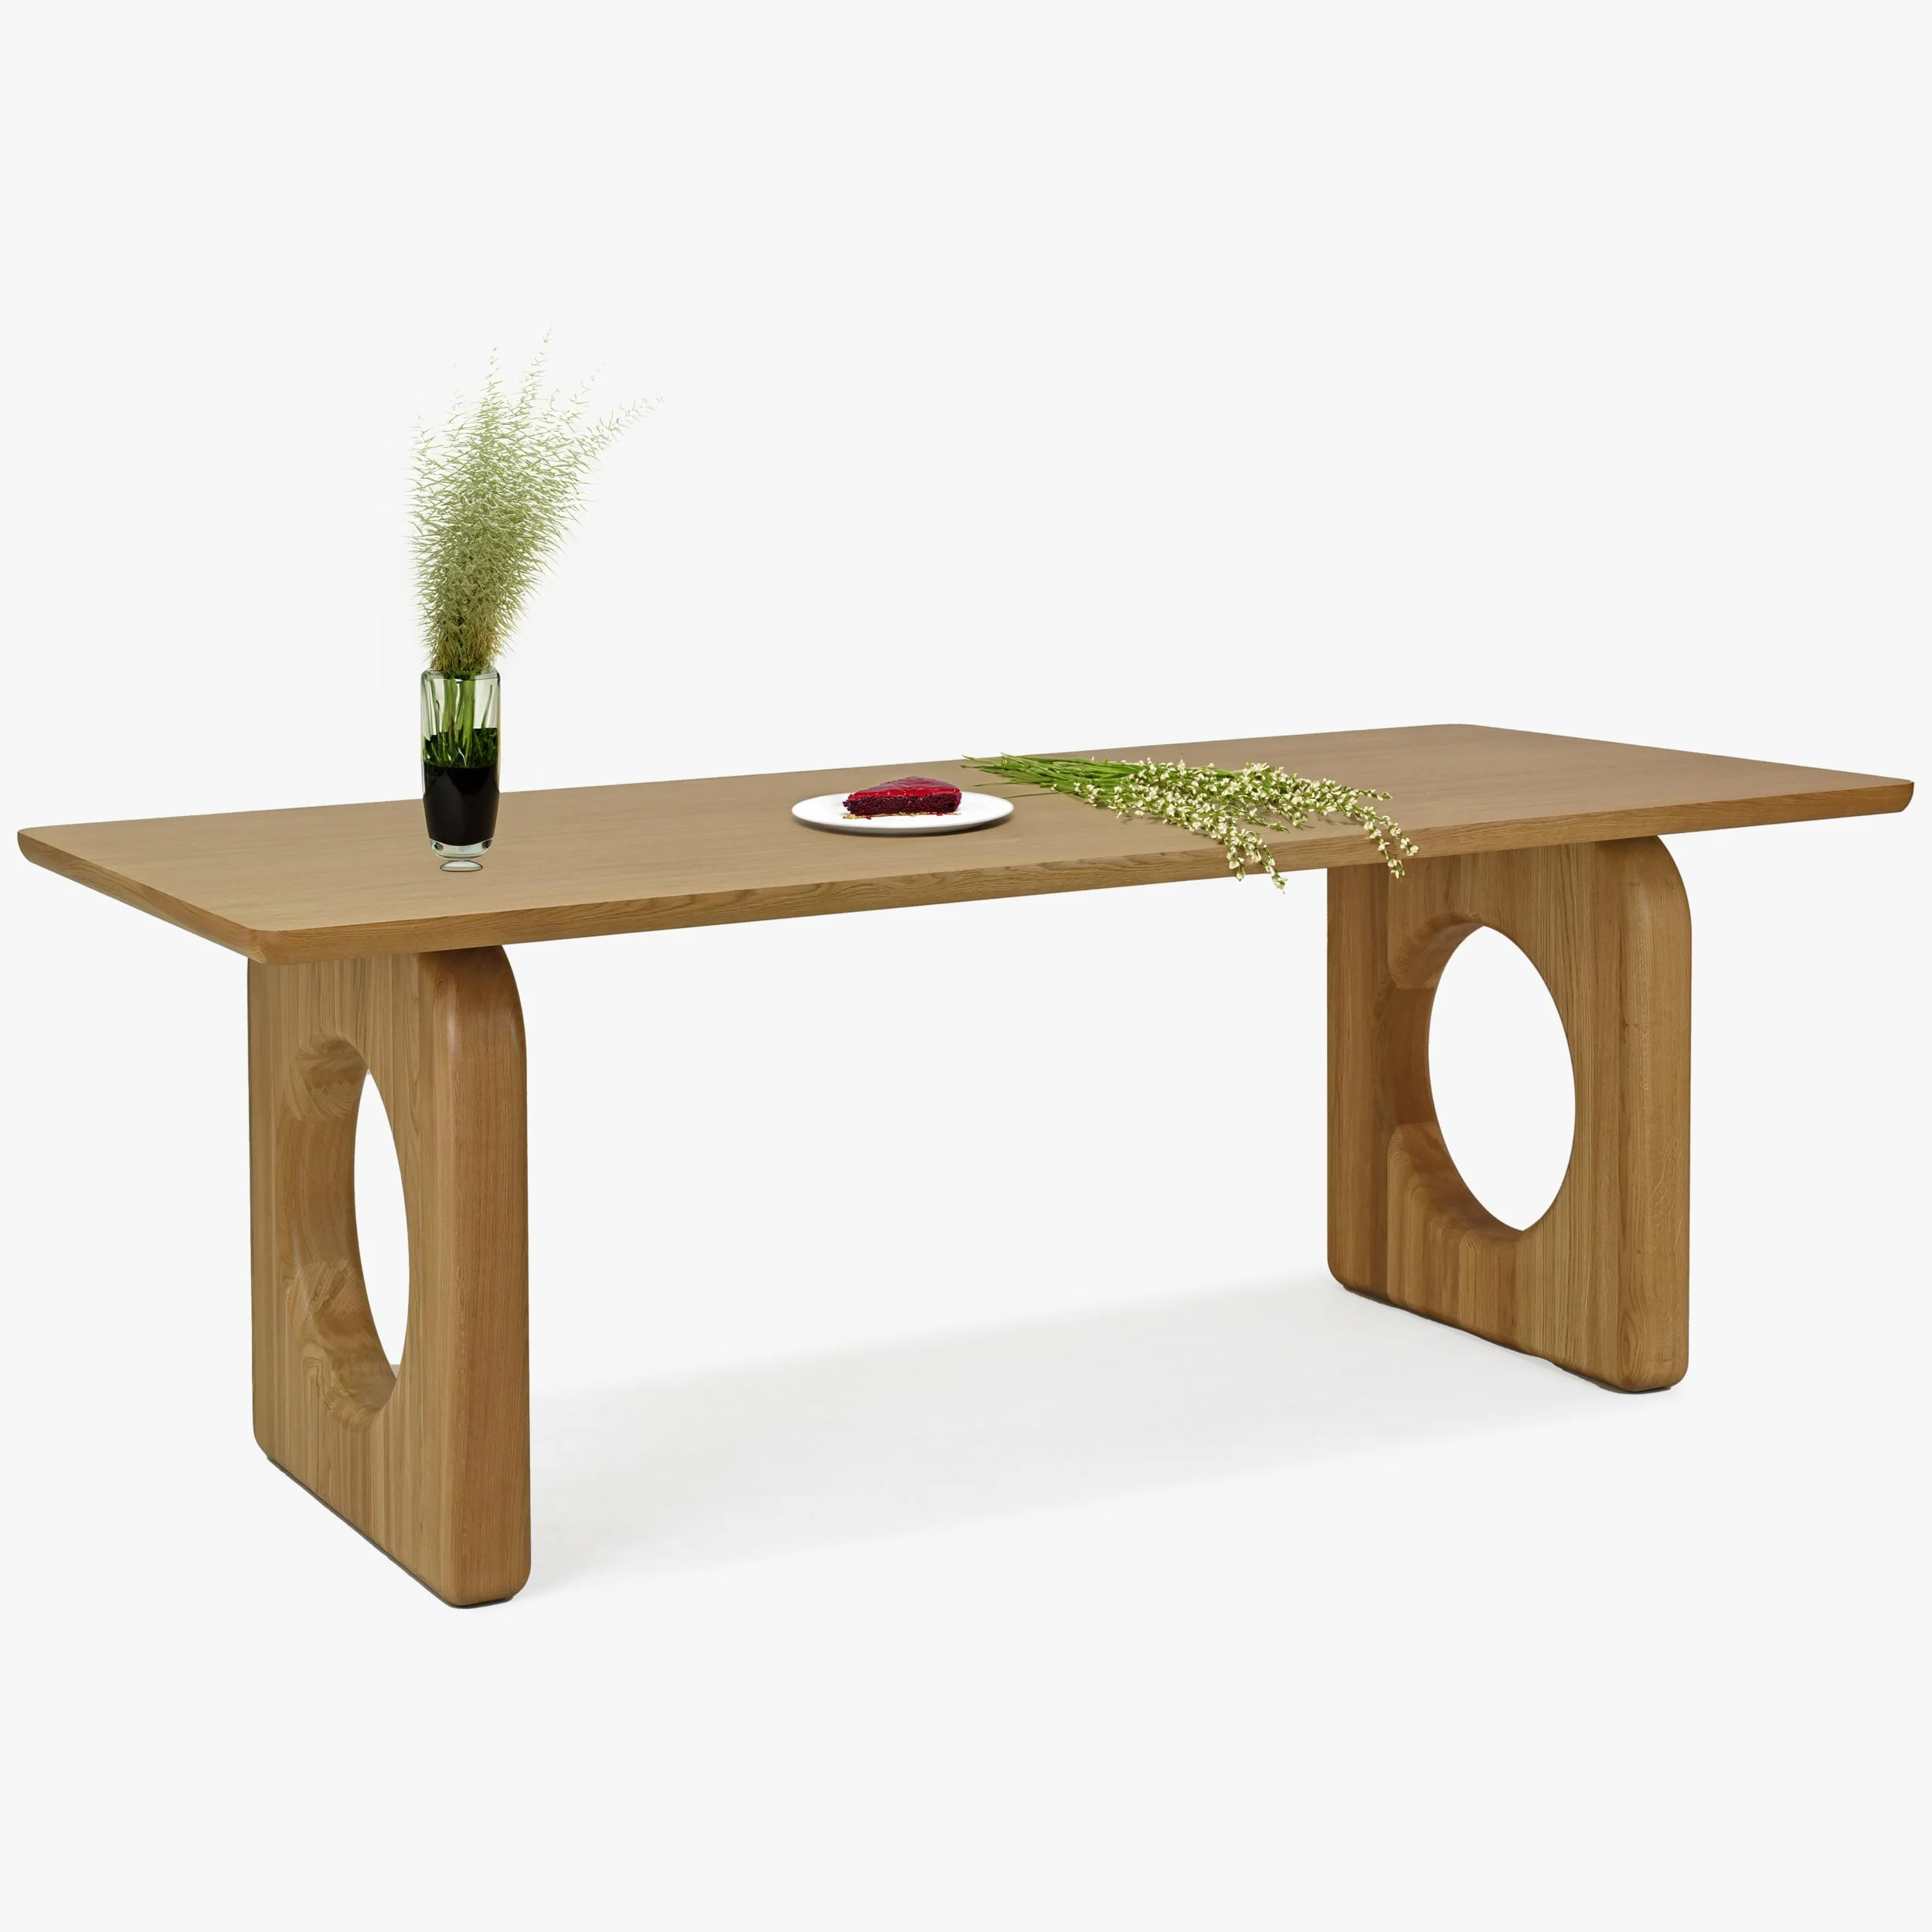 Dubový stôl do jedálne 220 cm dlhý